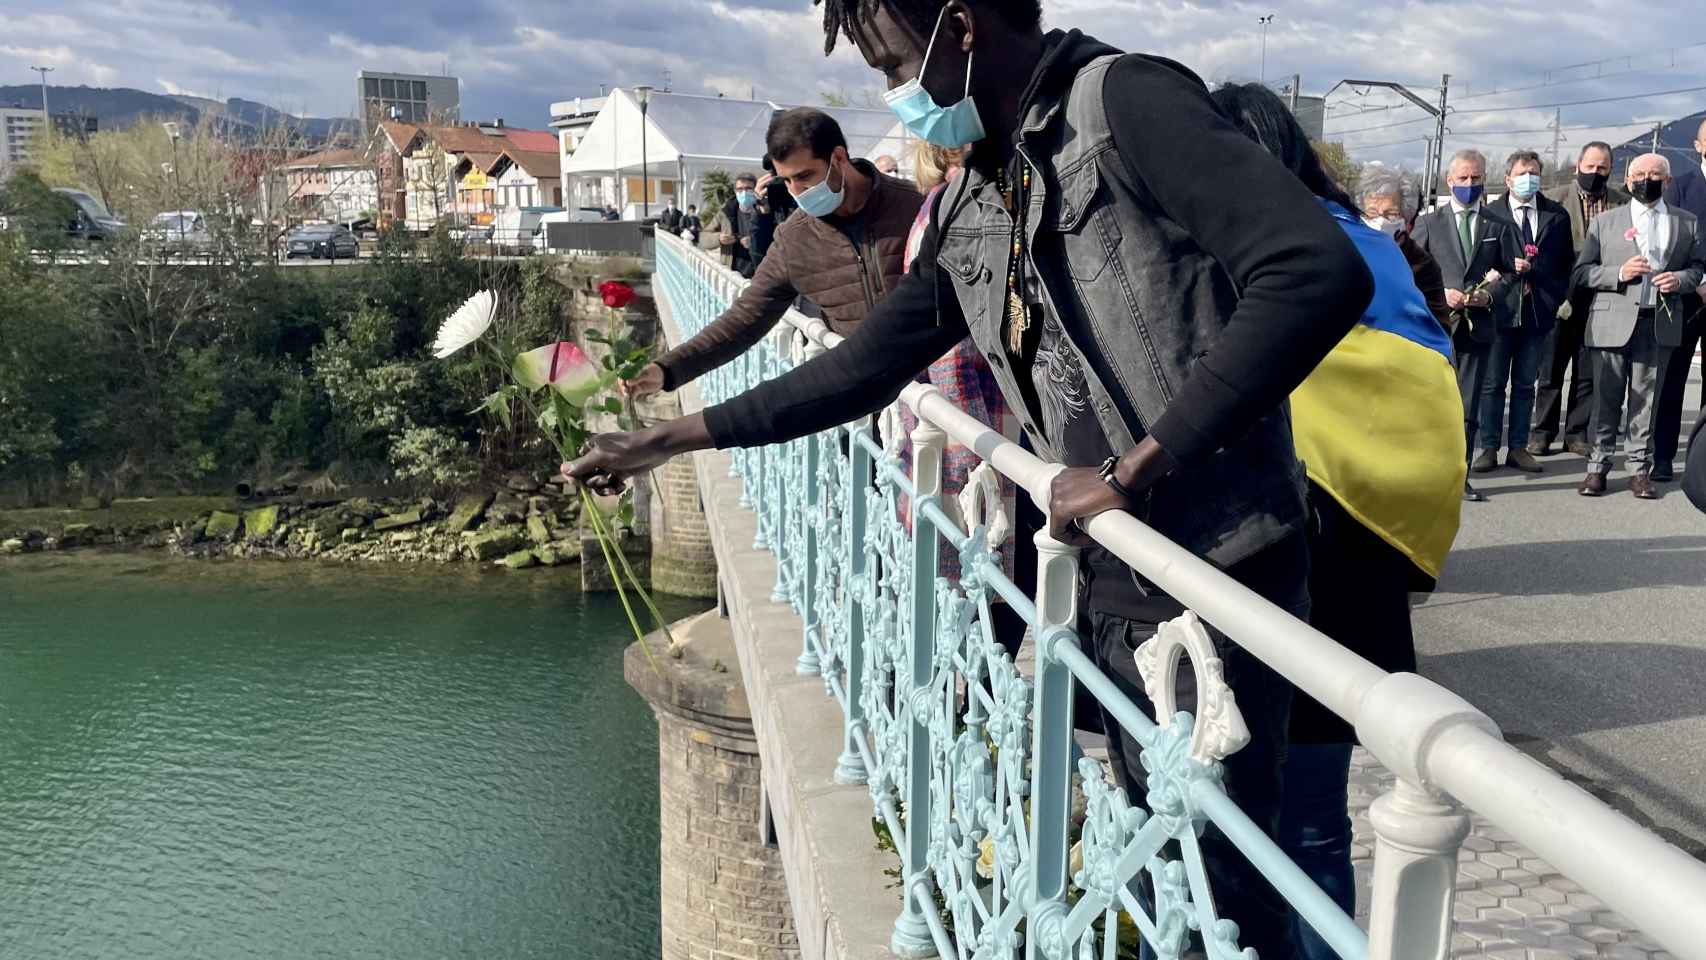 Un migrante realiza una ofrenda floral, en el ro Bidasoa, durante una concentracin para denunciar la muerte de migrantes / Europa Press